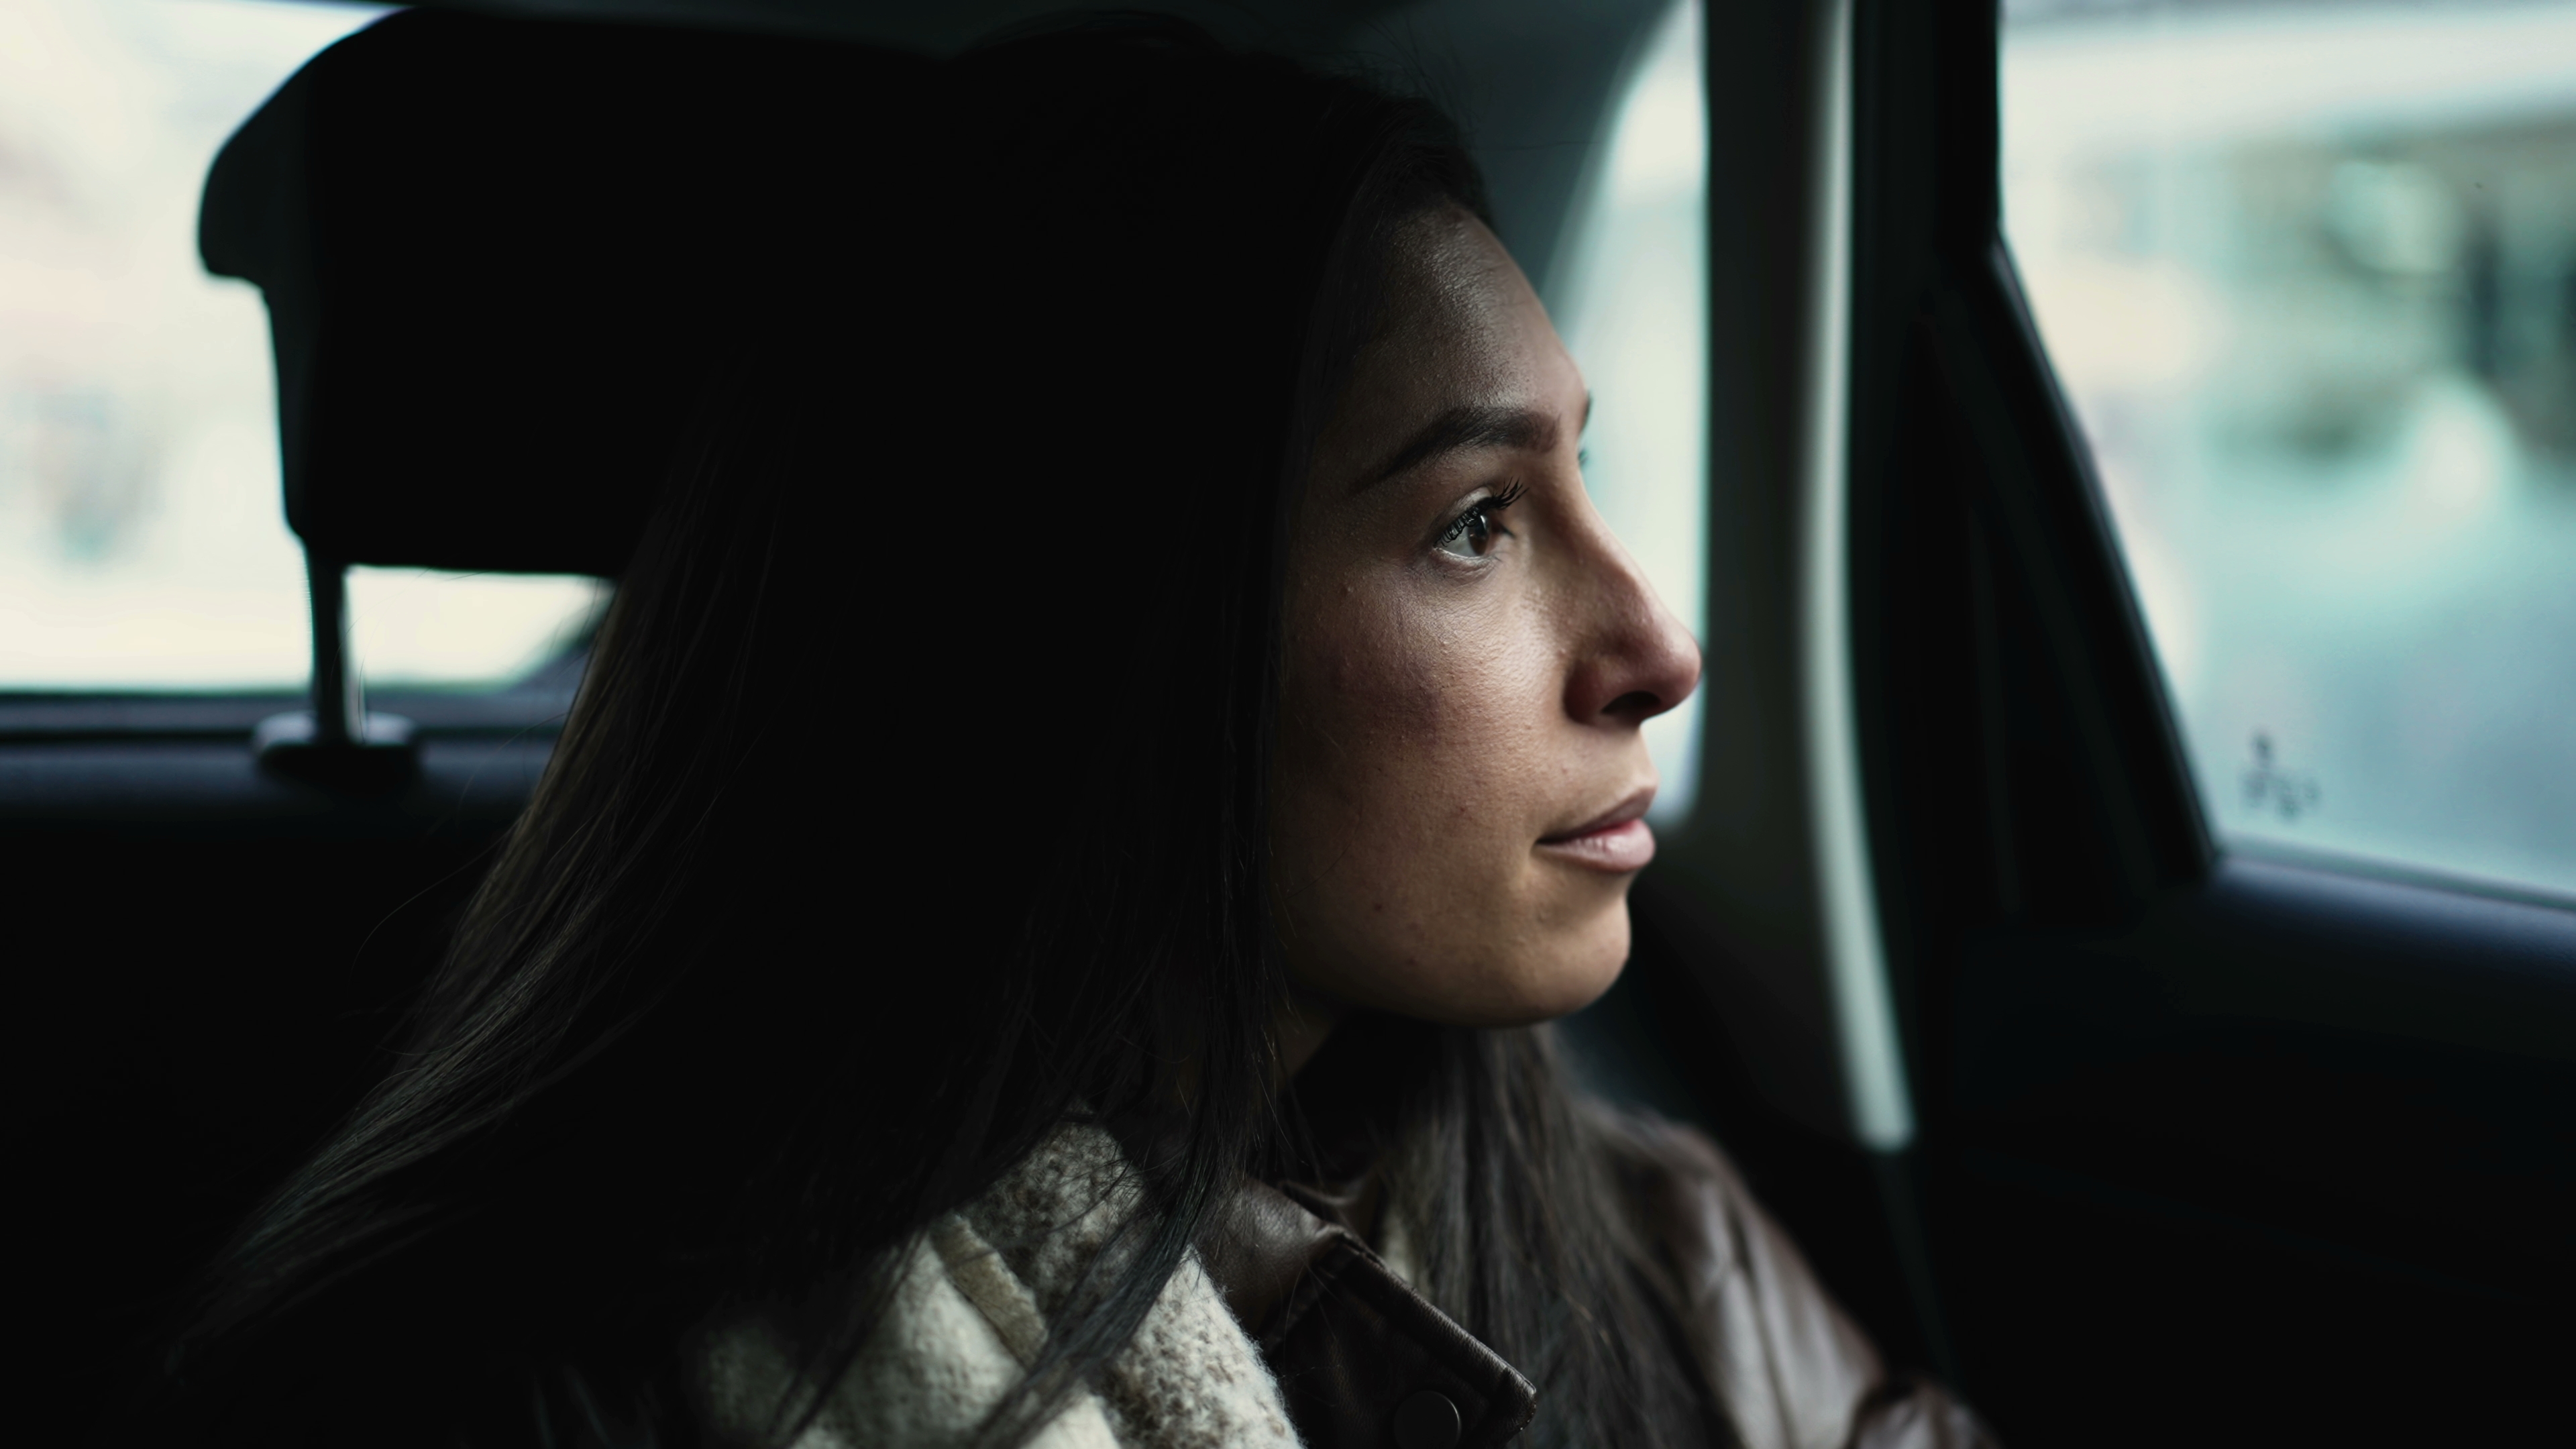 Female passenger inside car backseat looks out window. | Source: Shutterstock